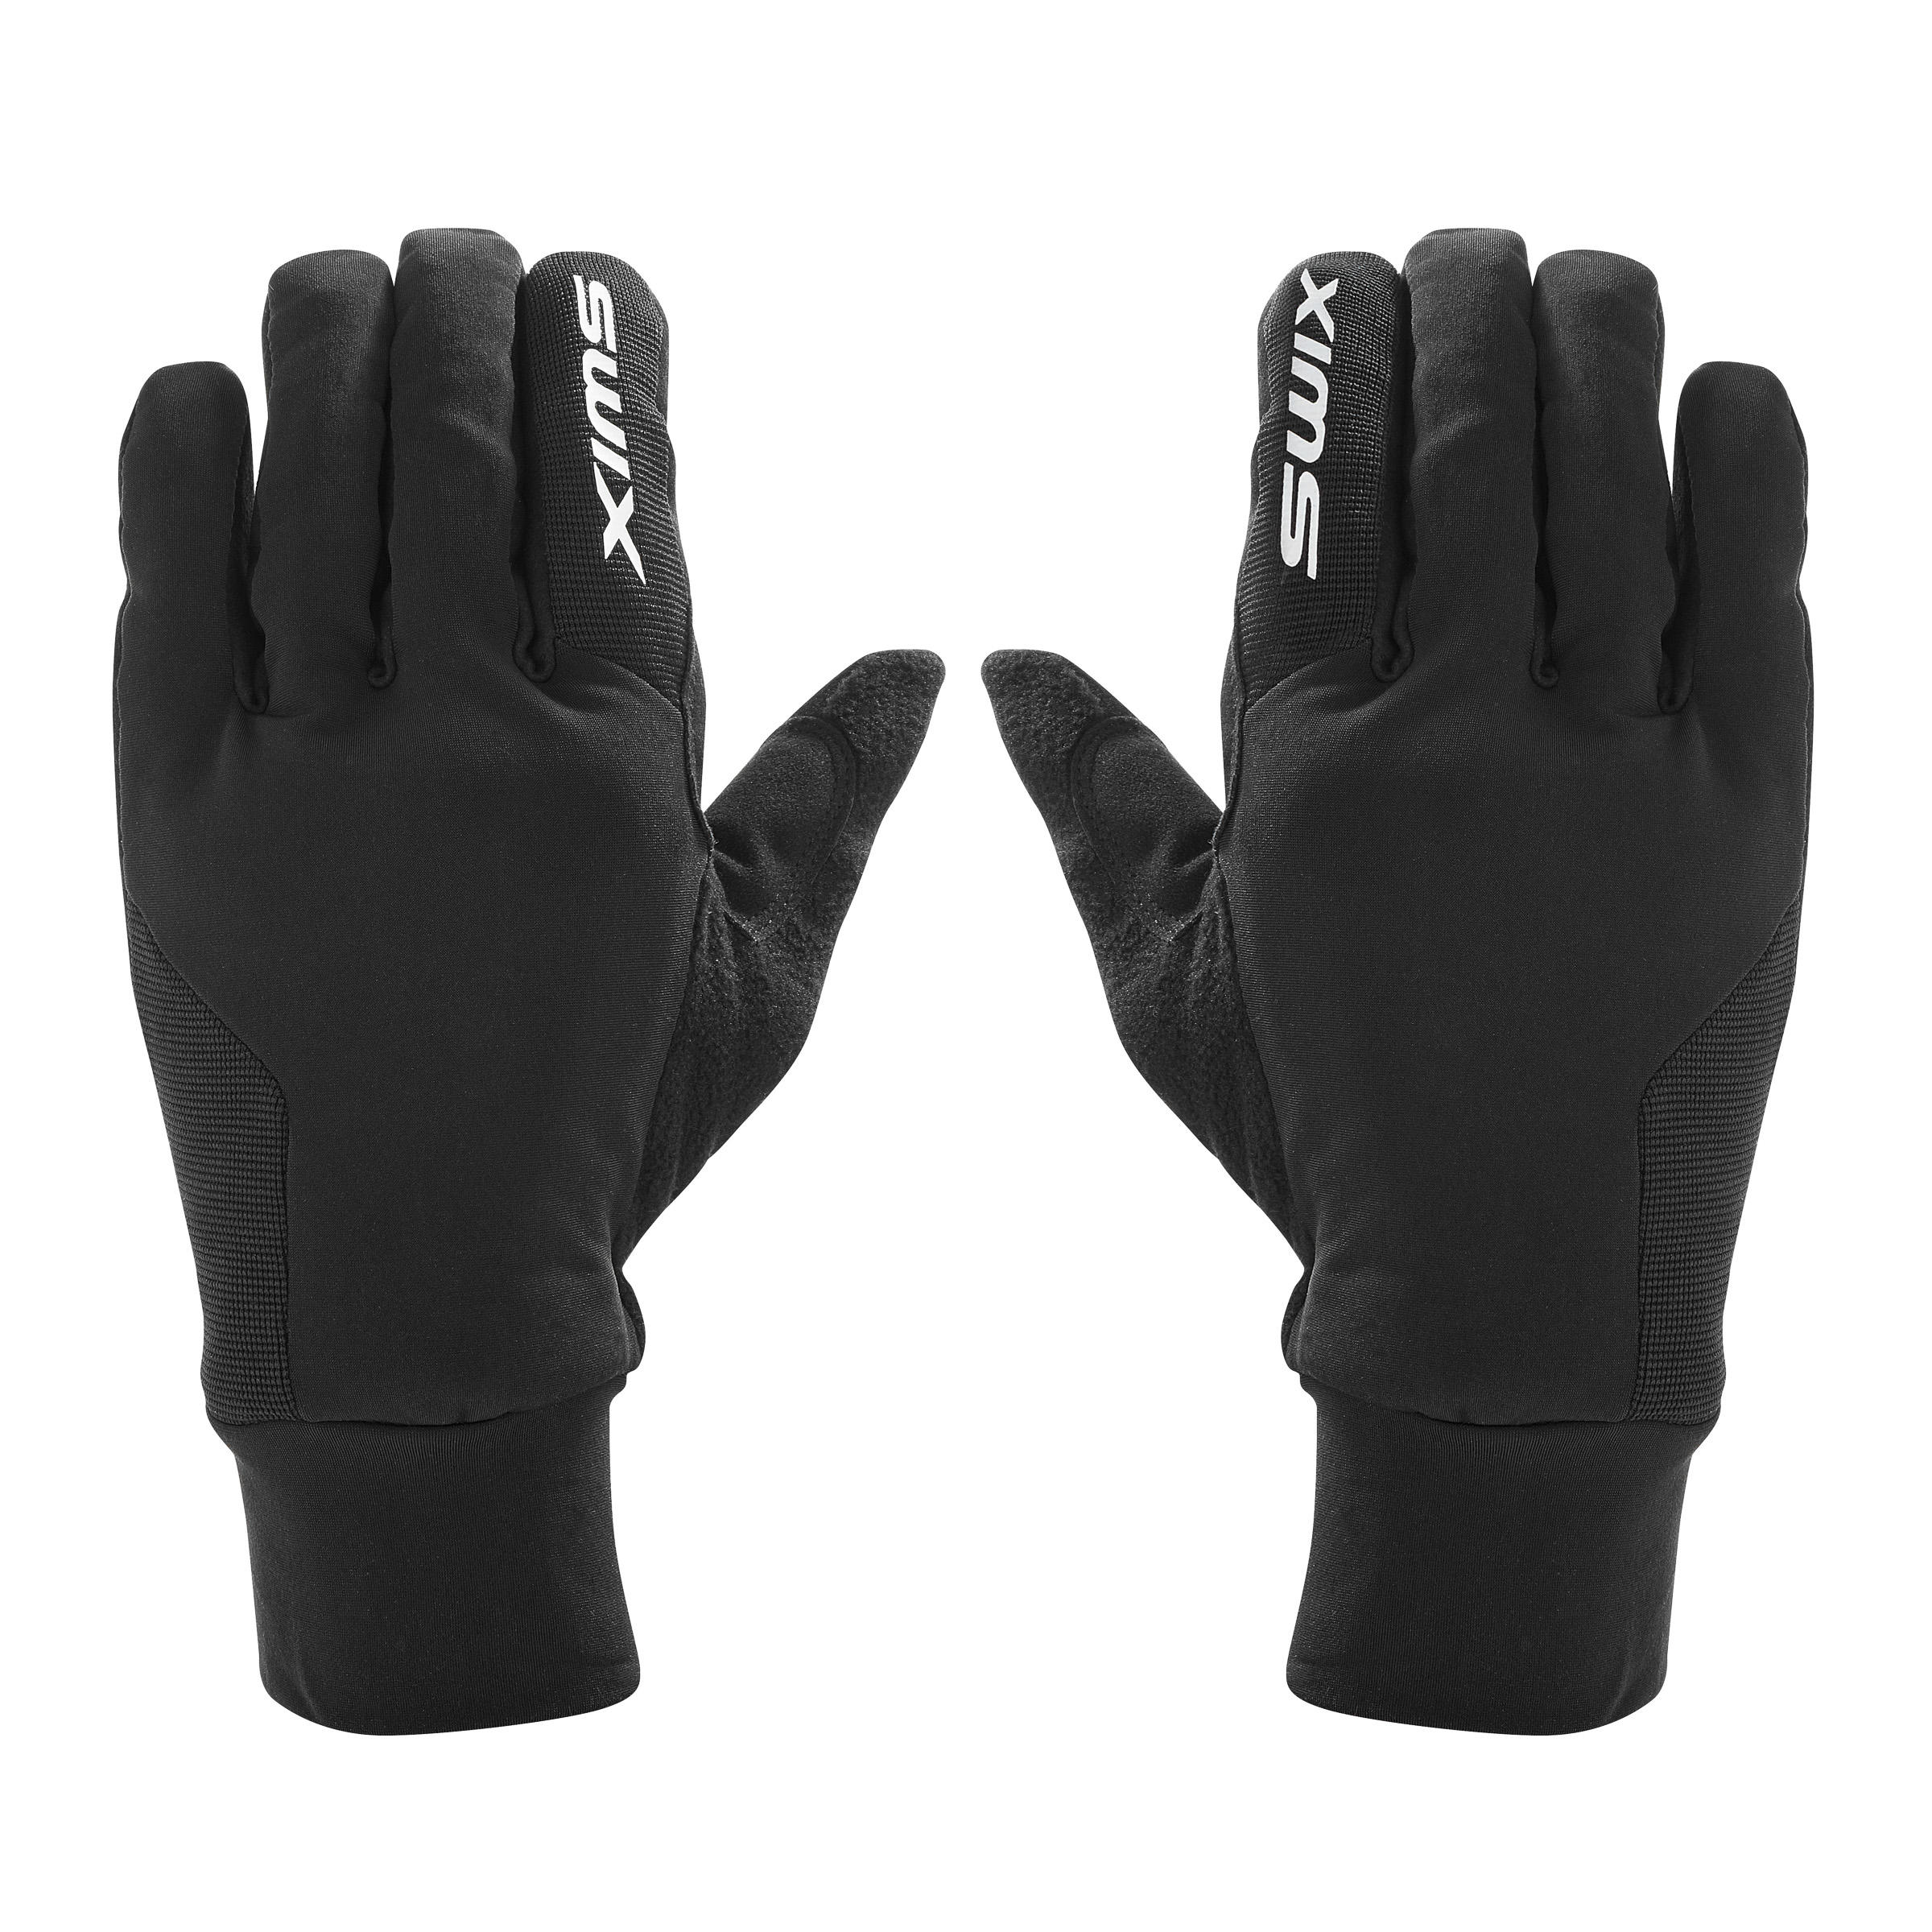 Men's Cross-Country Ski Gloves | XC S LYNX - Black 5/9